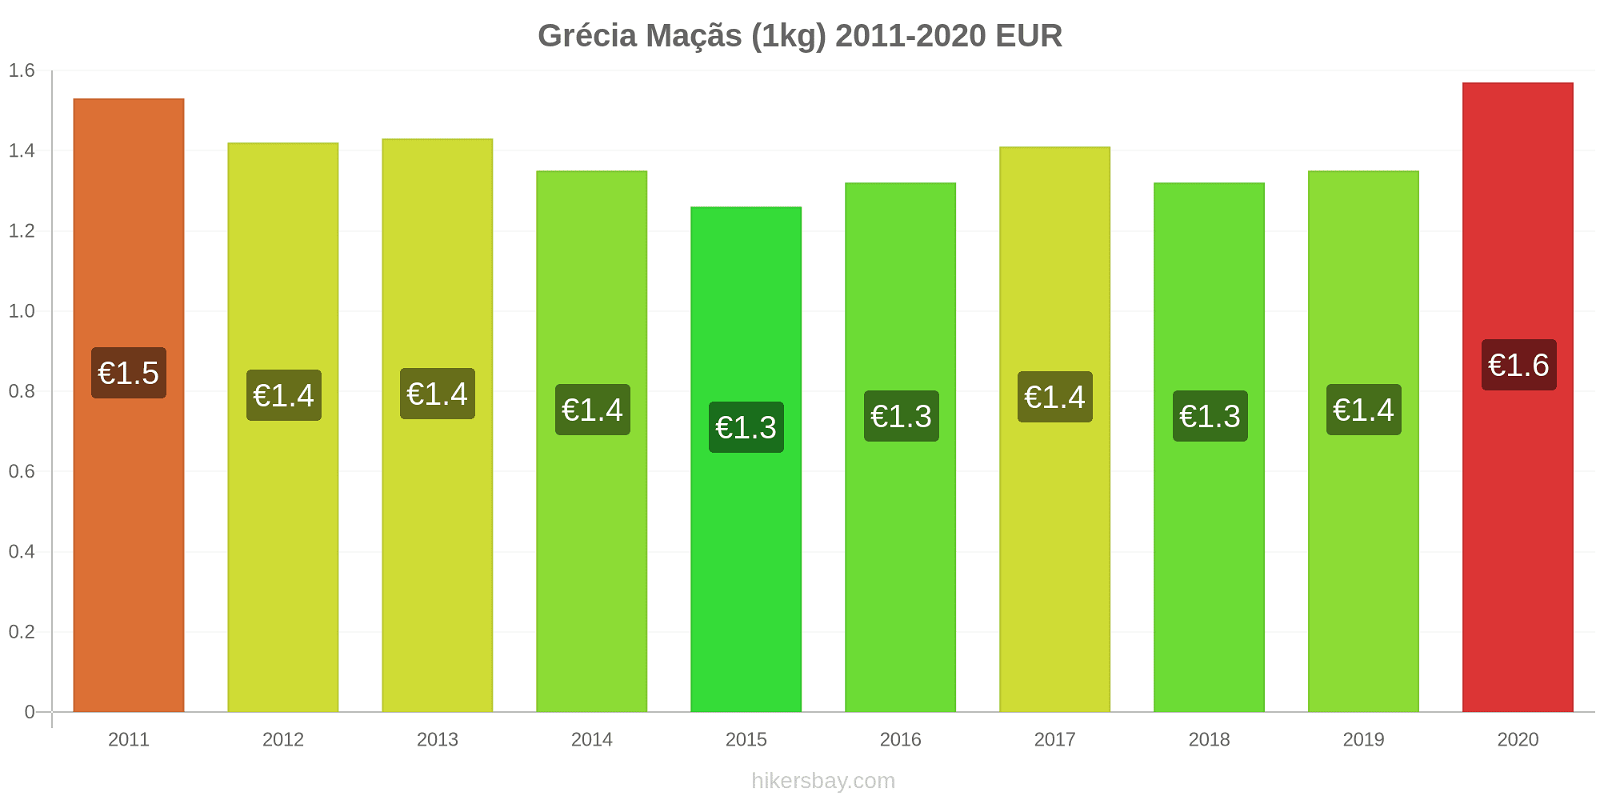 Grécia variação de preço Maçãs (1kg) hikersbay.com